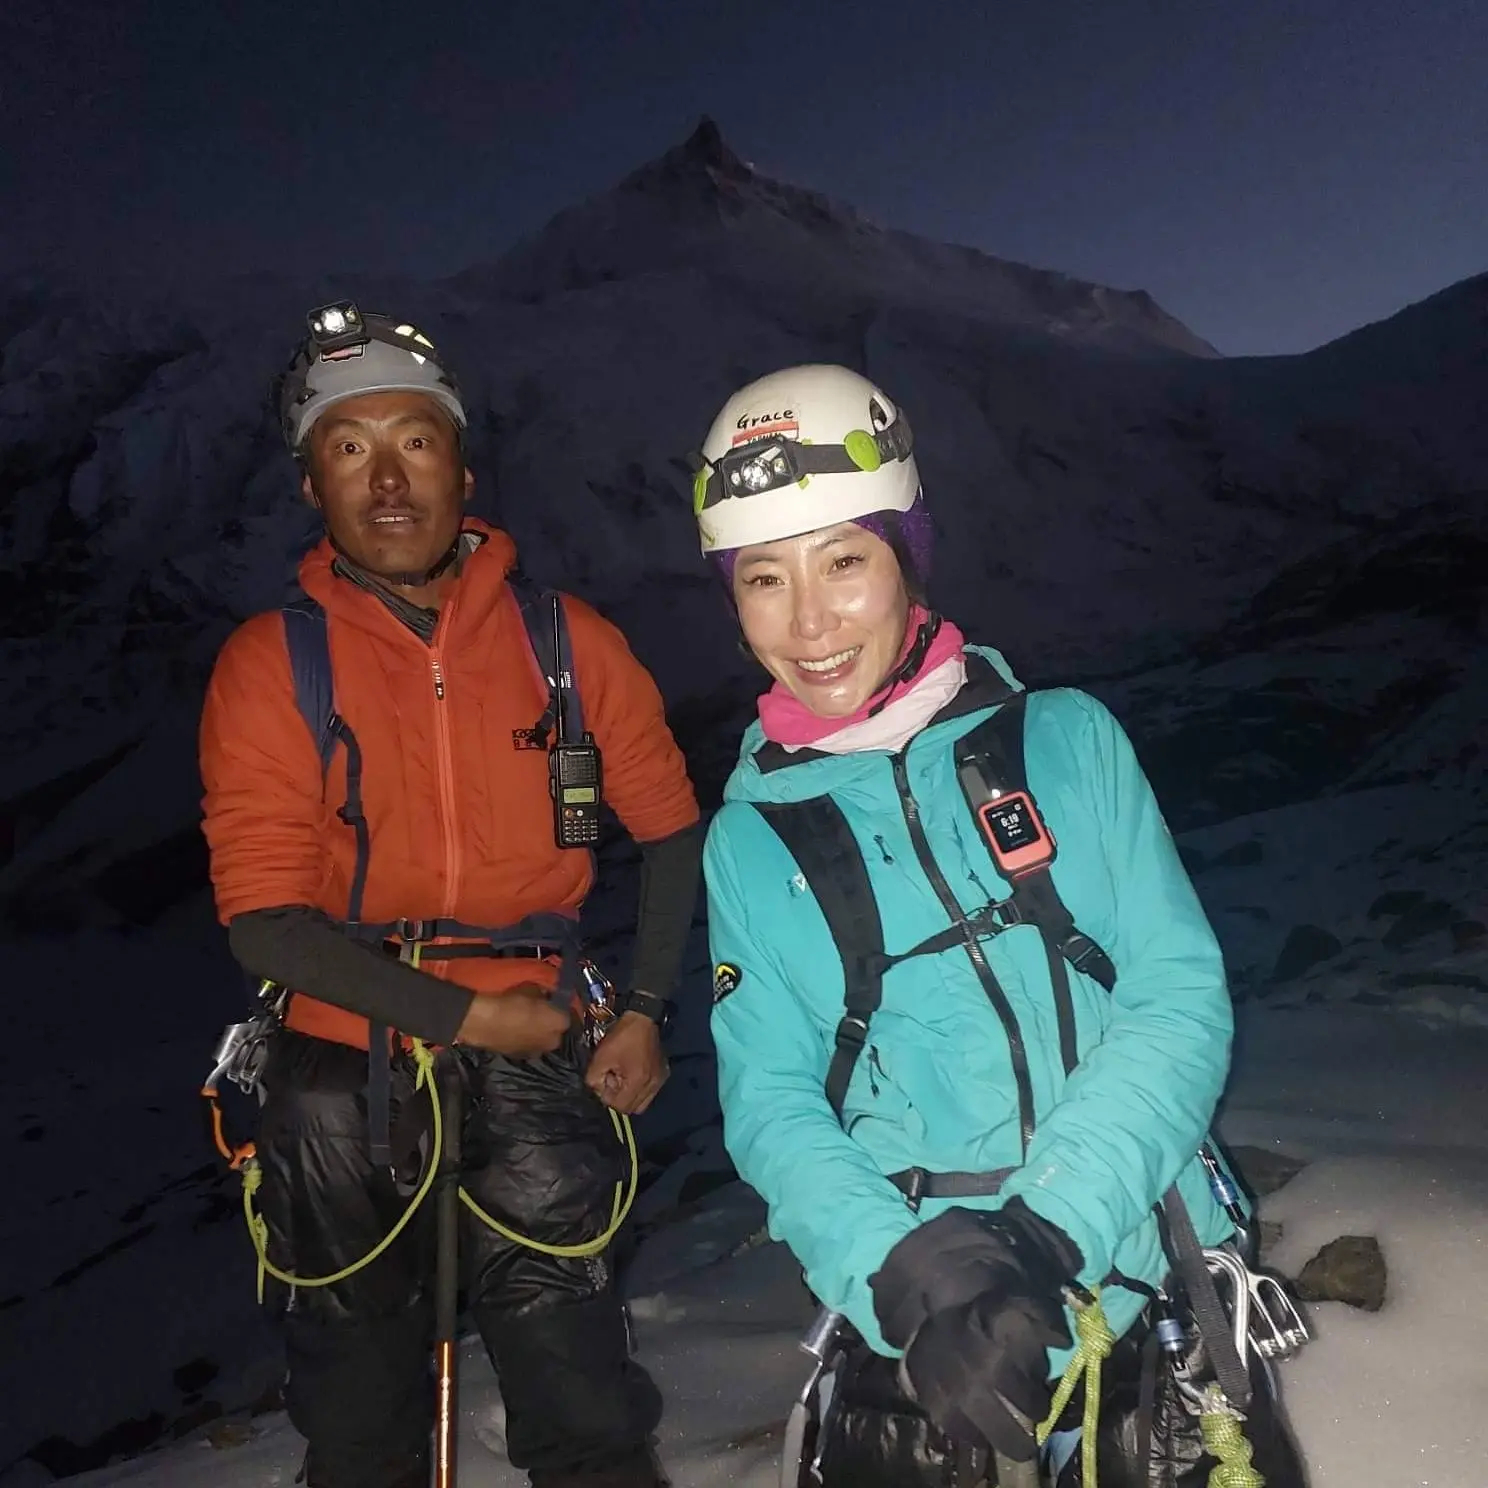 Німа Гьялзен Шерпа (Nima Gyalzen Sherpa) та Грейс Цзен (Grace Tseng)